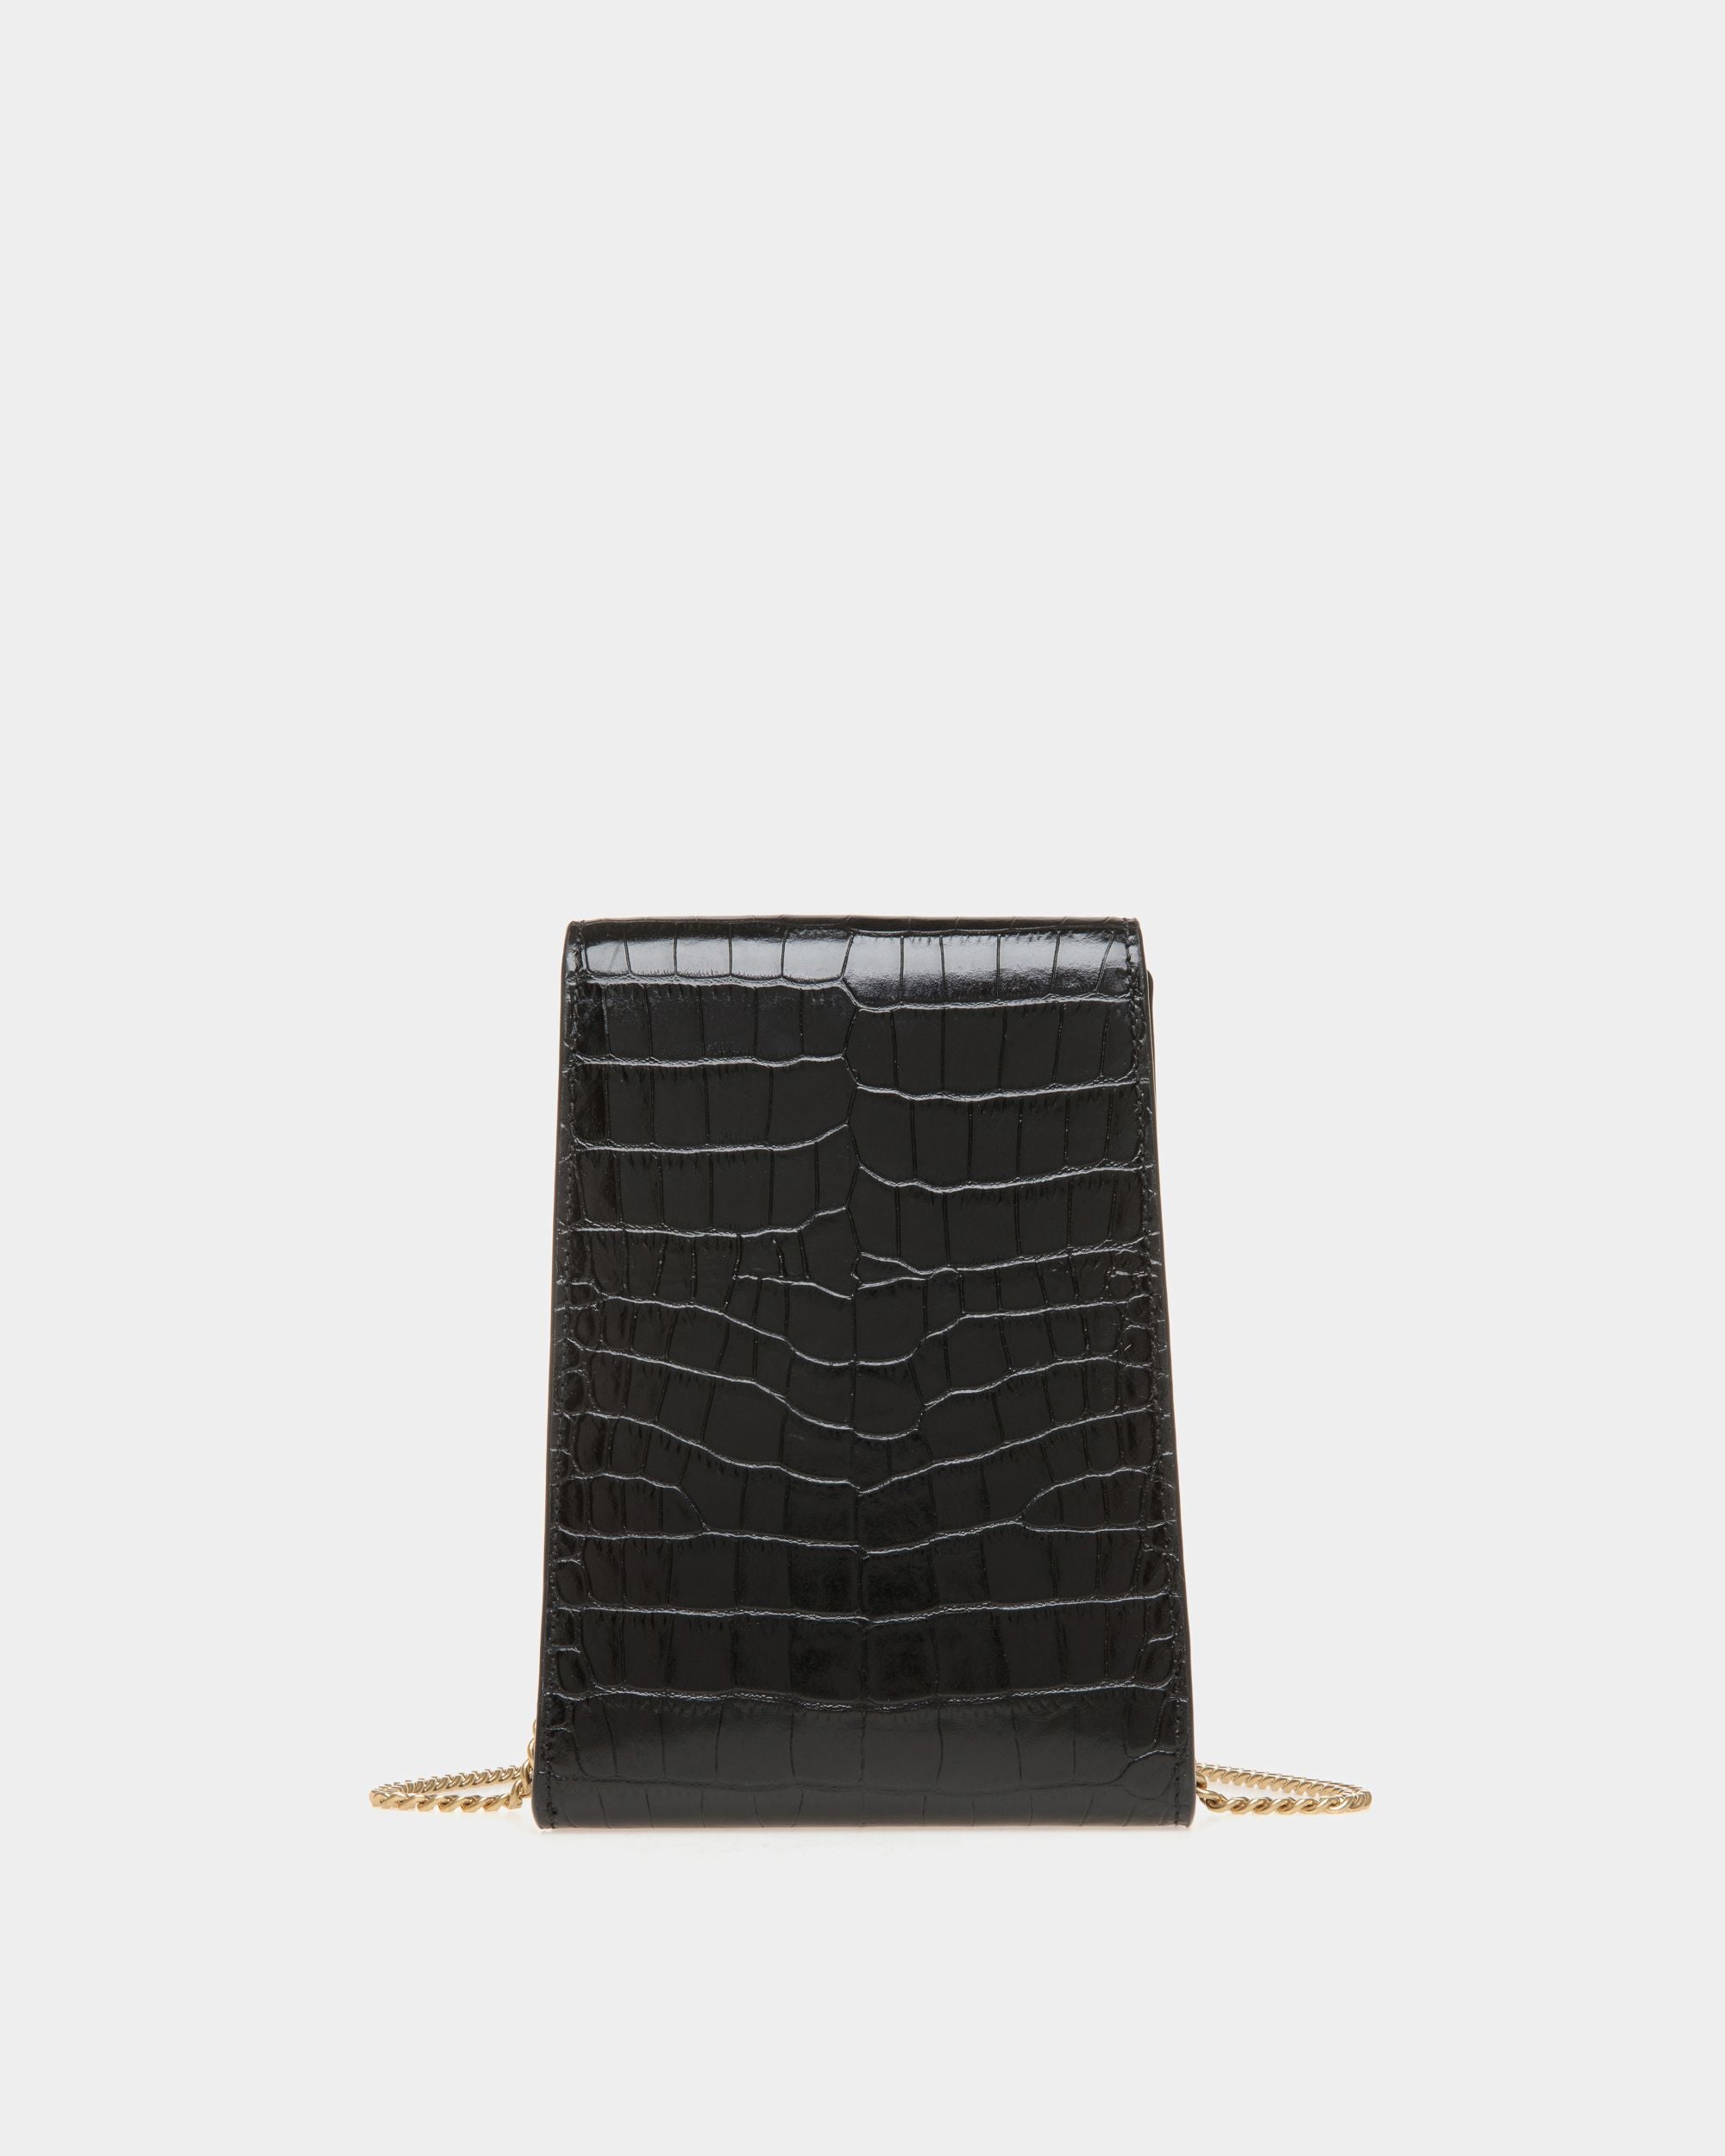 Tilt | Women's Phone Bag in Black Crocodile Print Leather | Bally | Still Life Back